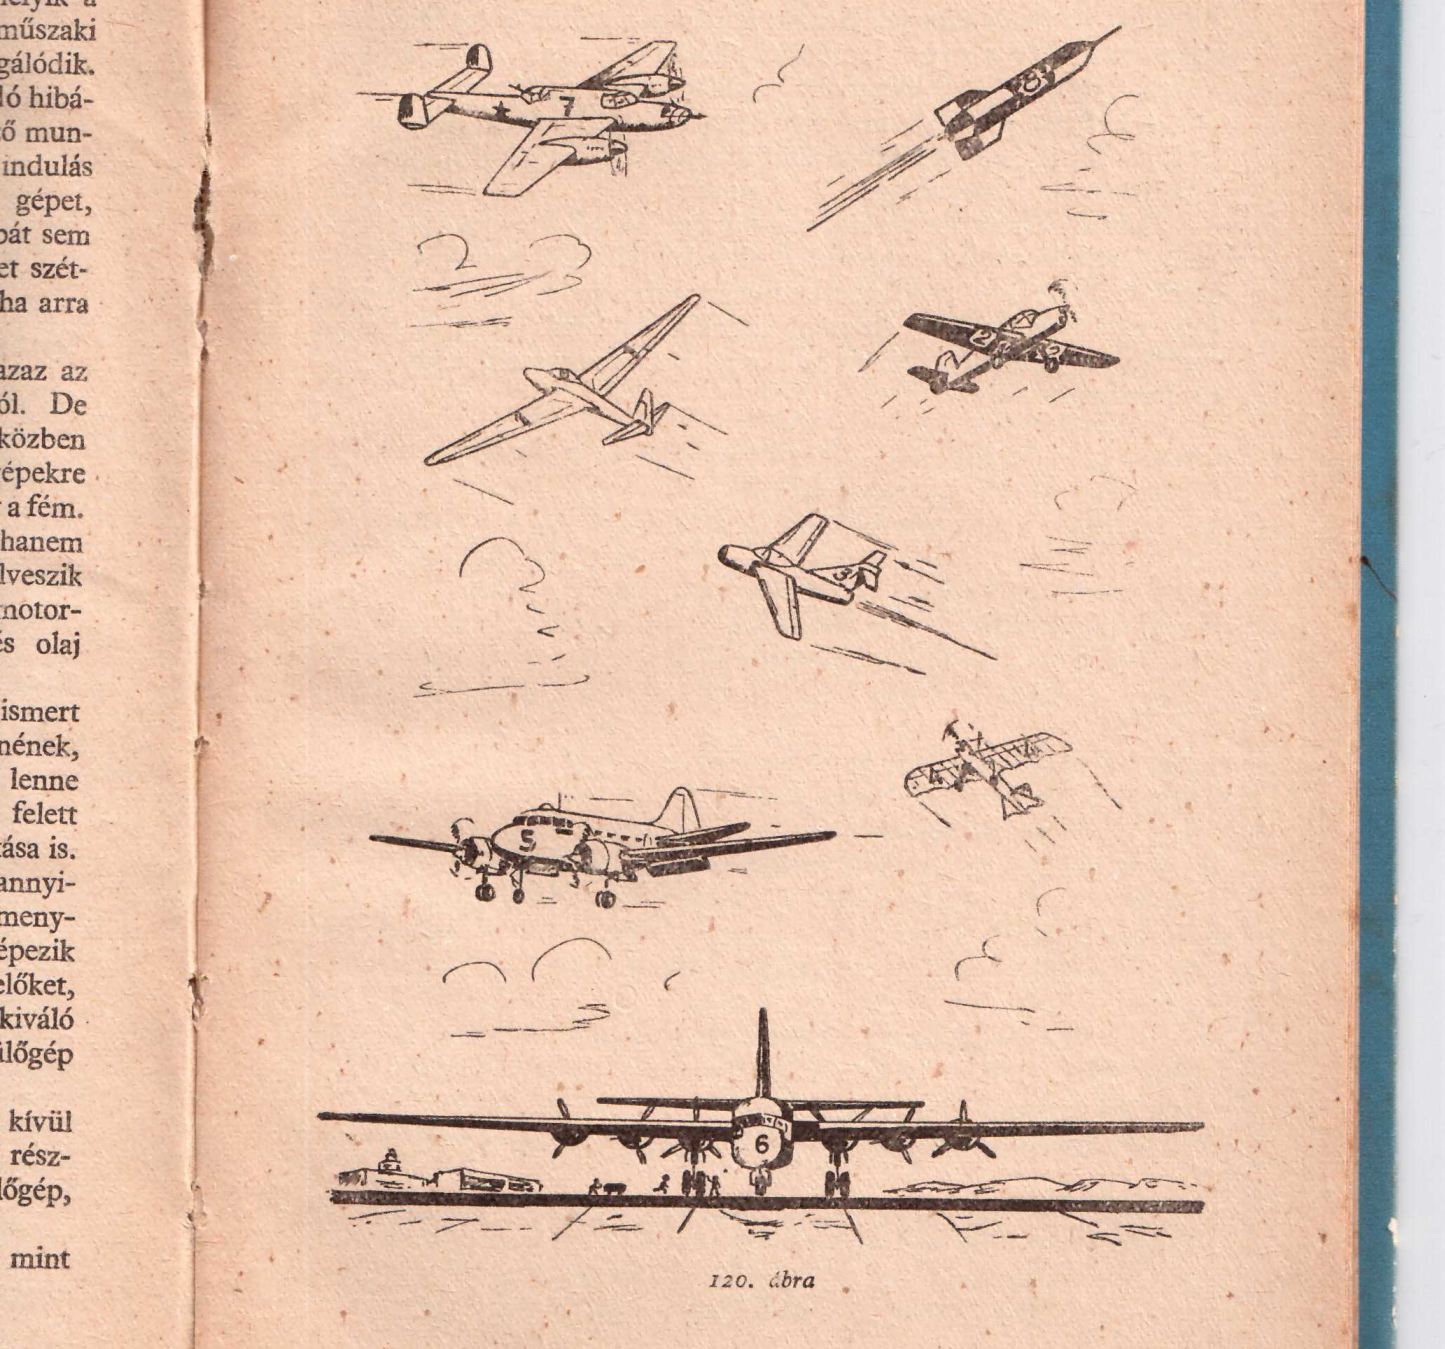 Mennyi érdekes gép, mennyit bámulhatták repülésimádó fiatalok ezeket a rajzokat...